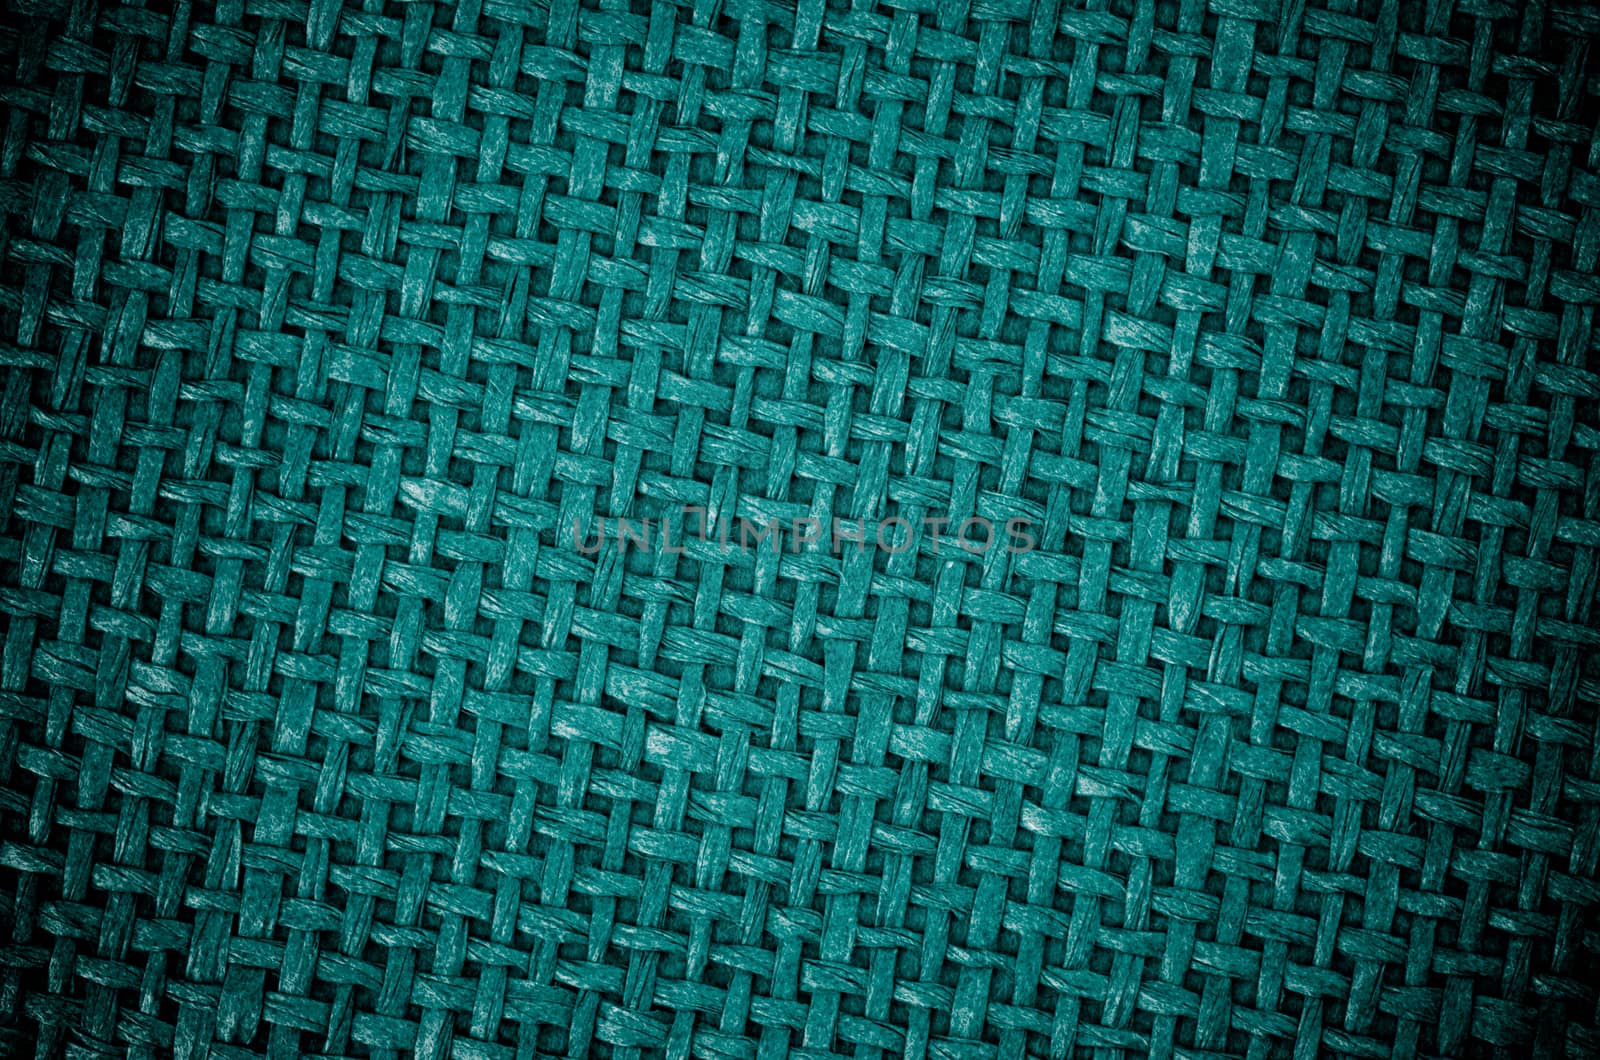 Dark Green Canvas Background by zhekos